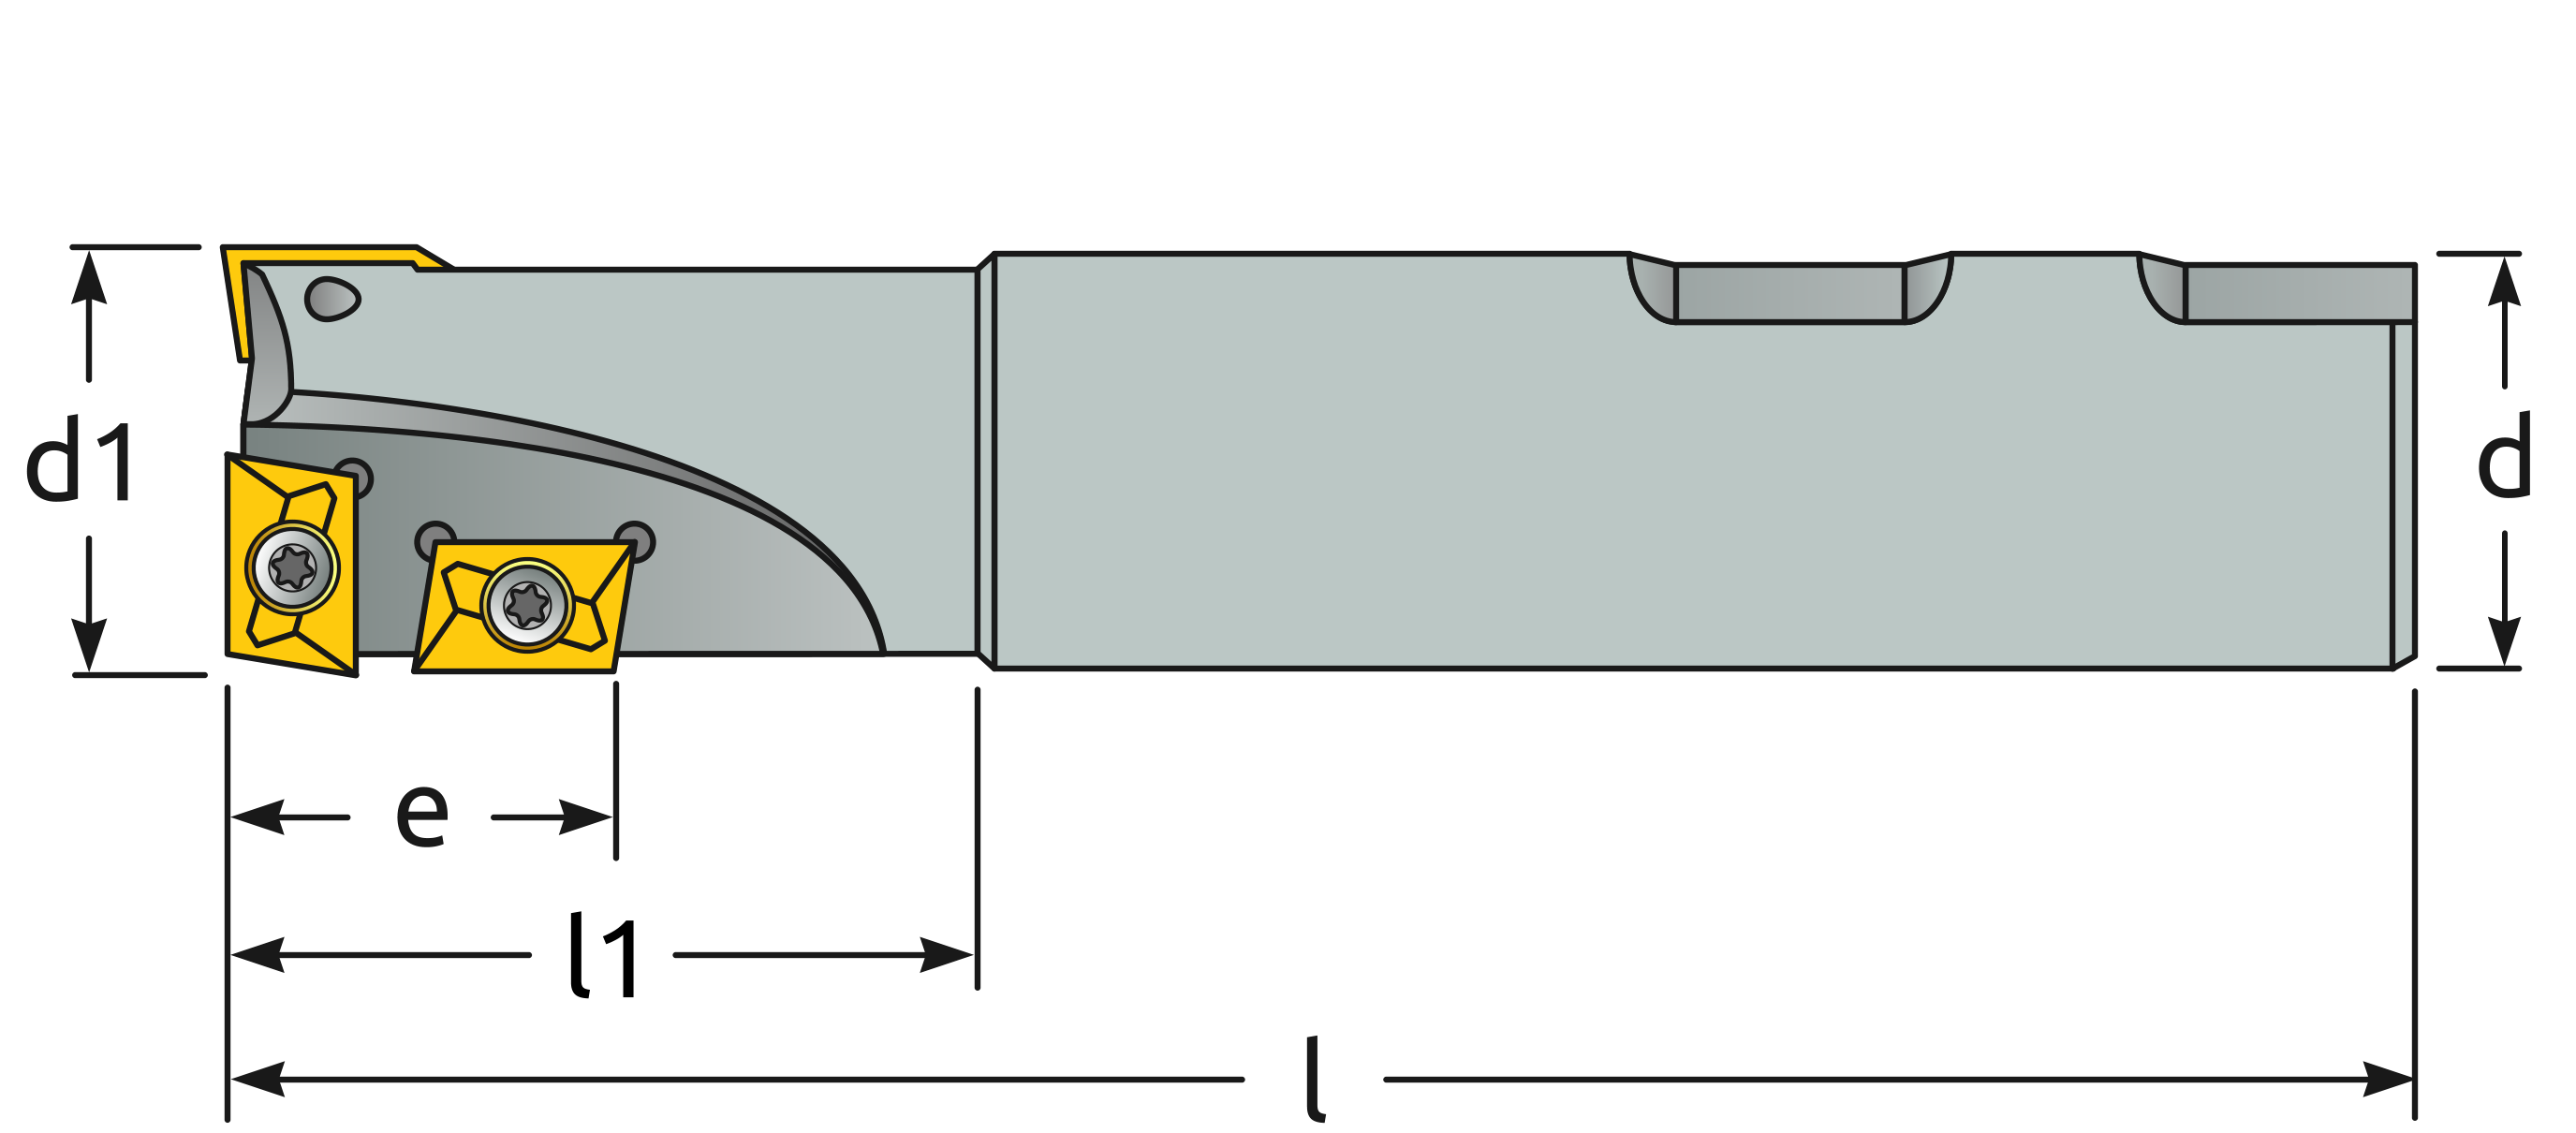 Dimensiones del Porta insertos EMP05